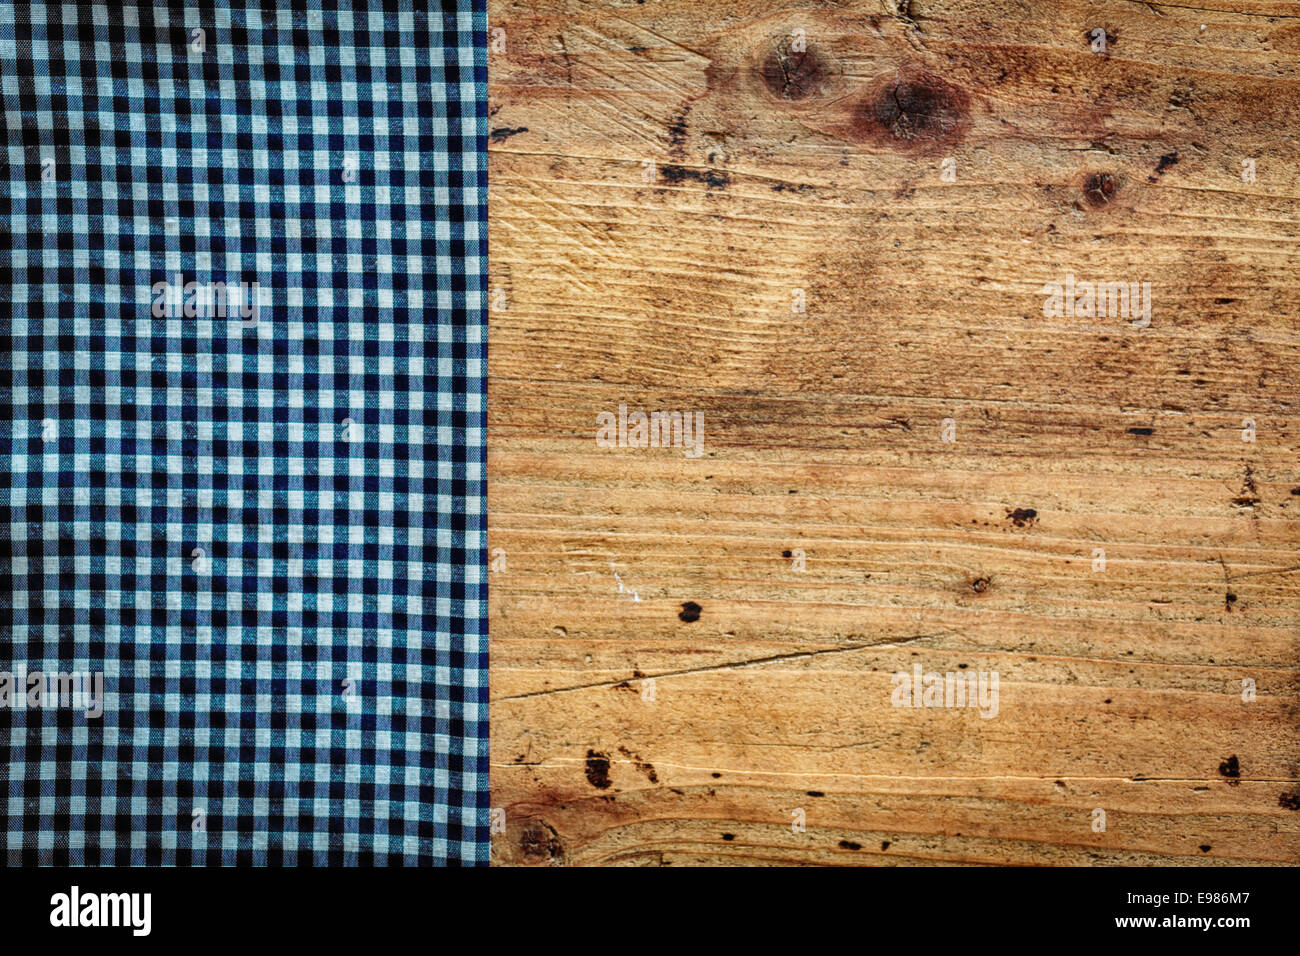 Konzeptbild von einem Land Küche Hintergrund mit einer alten gebeiztem Holz Oberfläche überlagert durch eine frische blaue und weiße gefaltete Serviette als Grenze auf der linken Seite Stockfoto